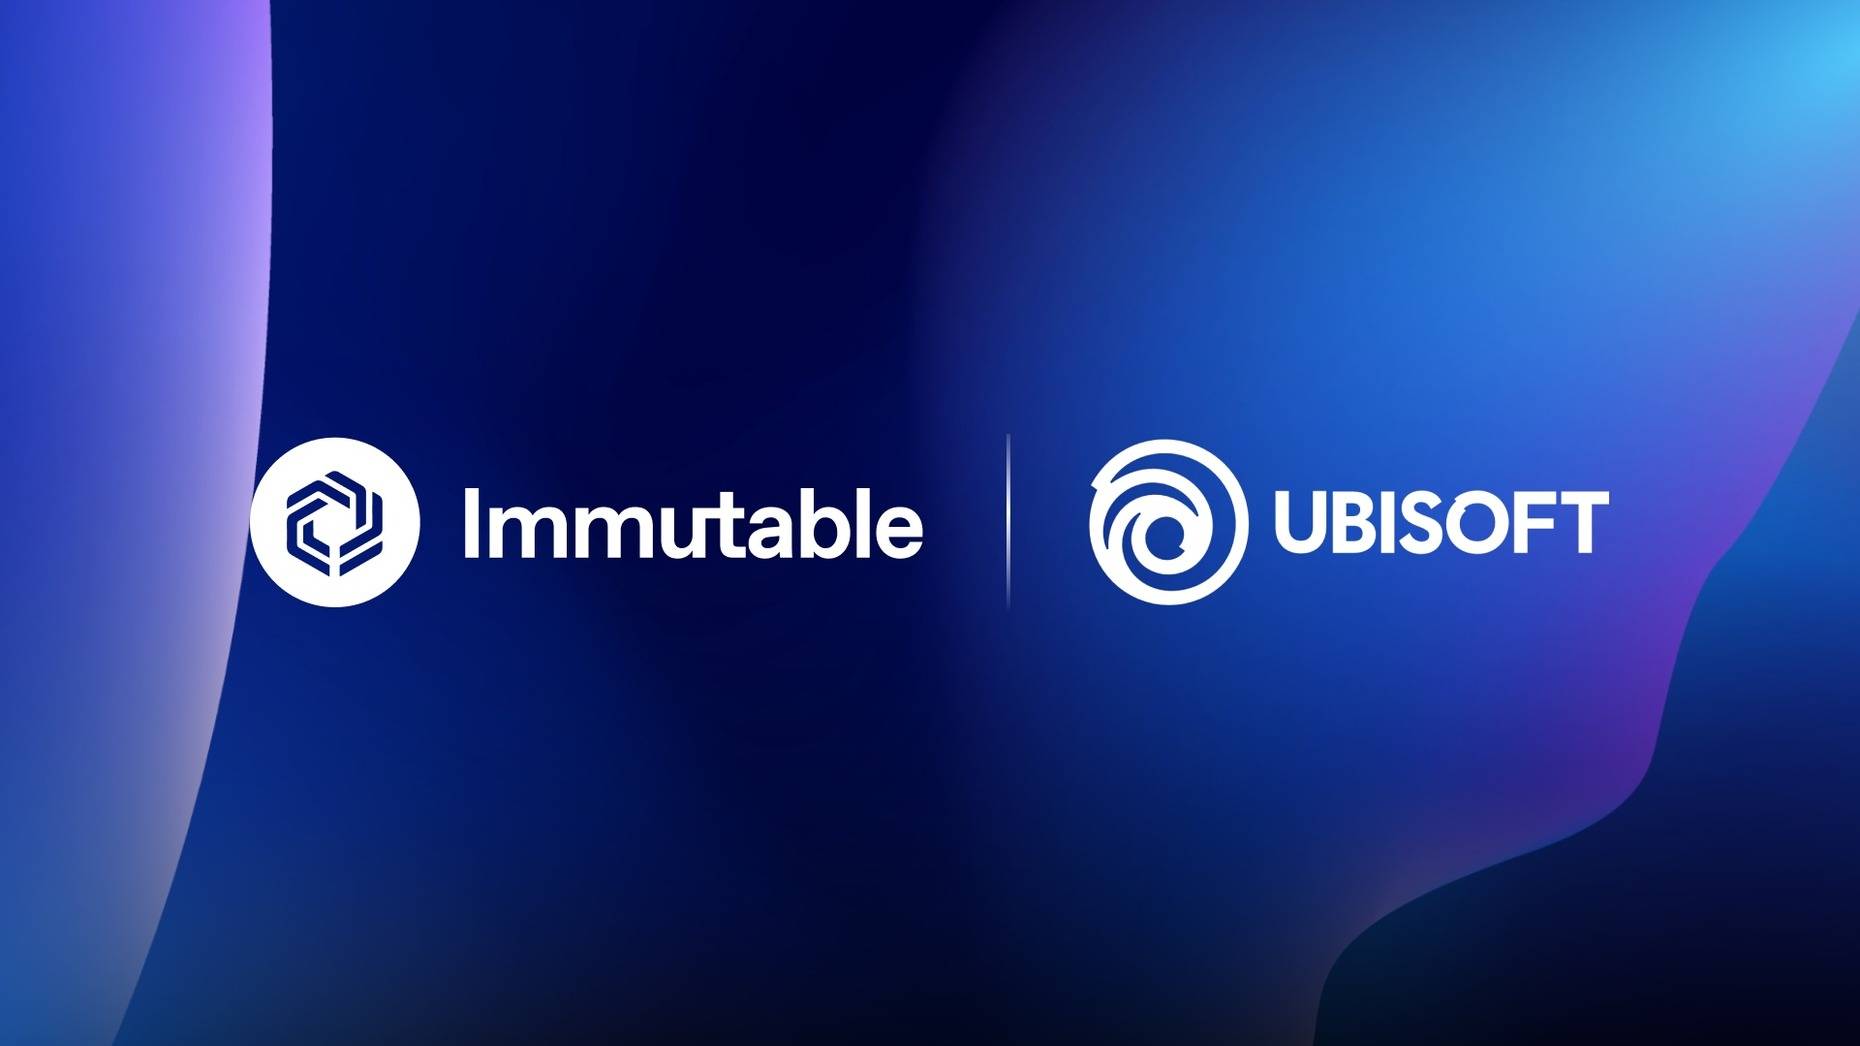 Ubisoft e Immutable unen fuerzas para una revolucionaria experiencia de juego Web3